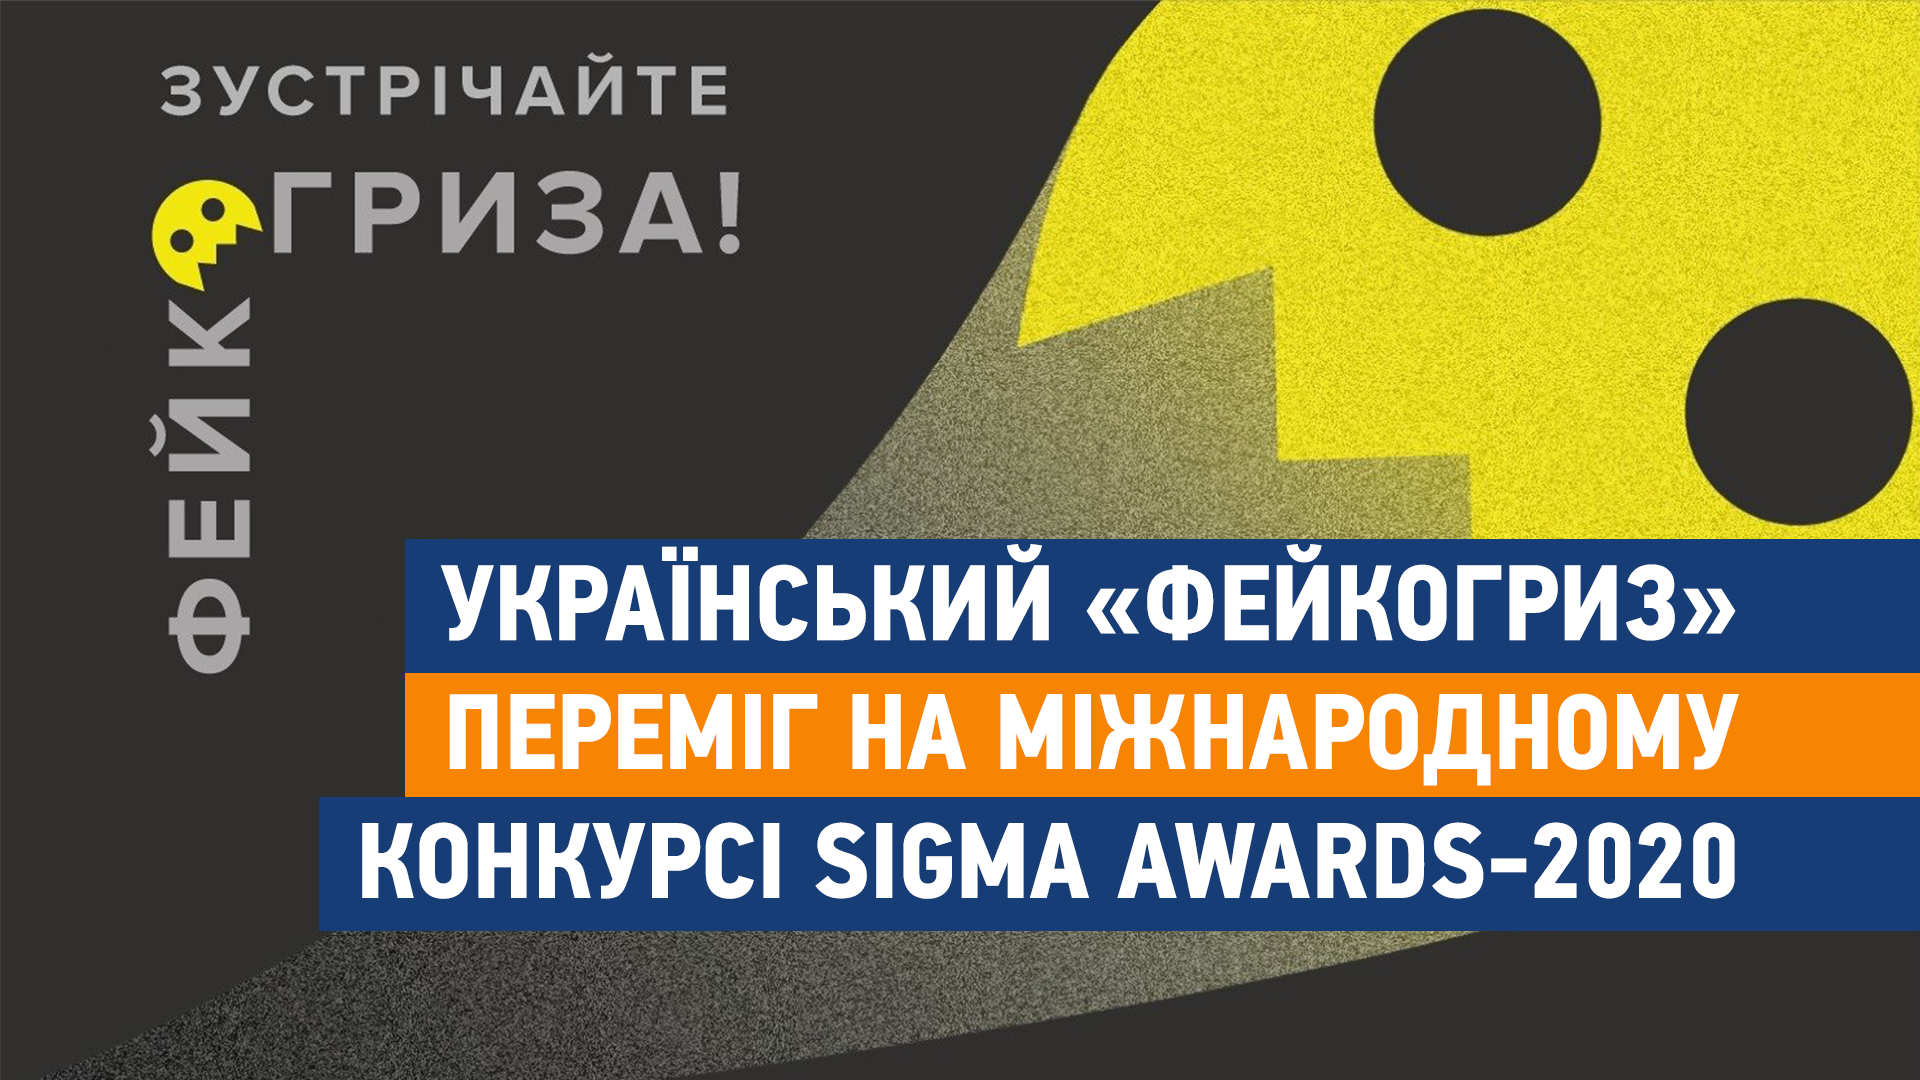 Український «Фейкогриз» переміг на міжнародному конкурсі Sigma Awards-2020